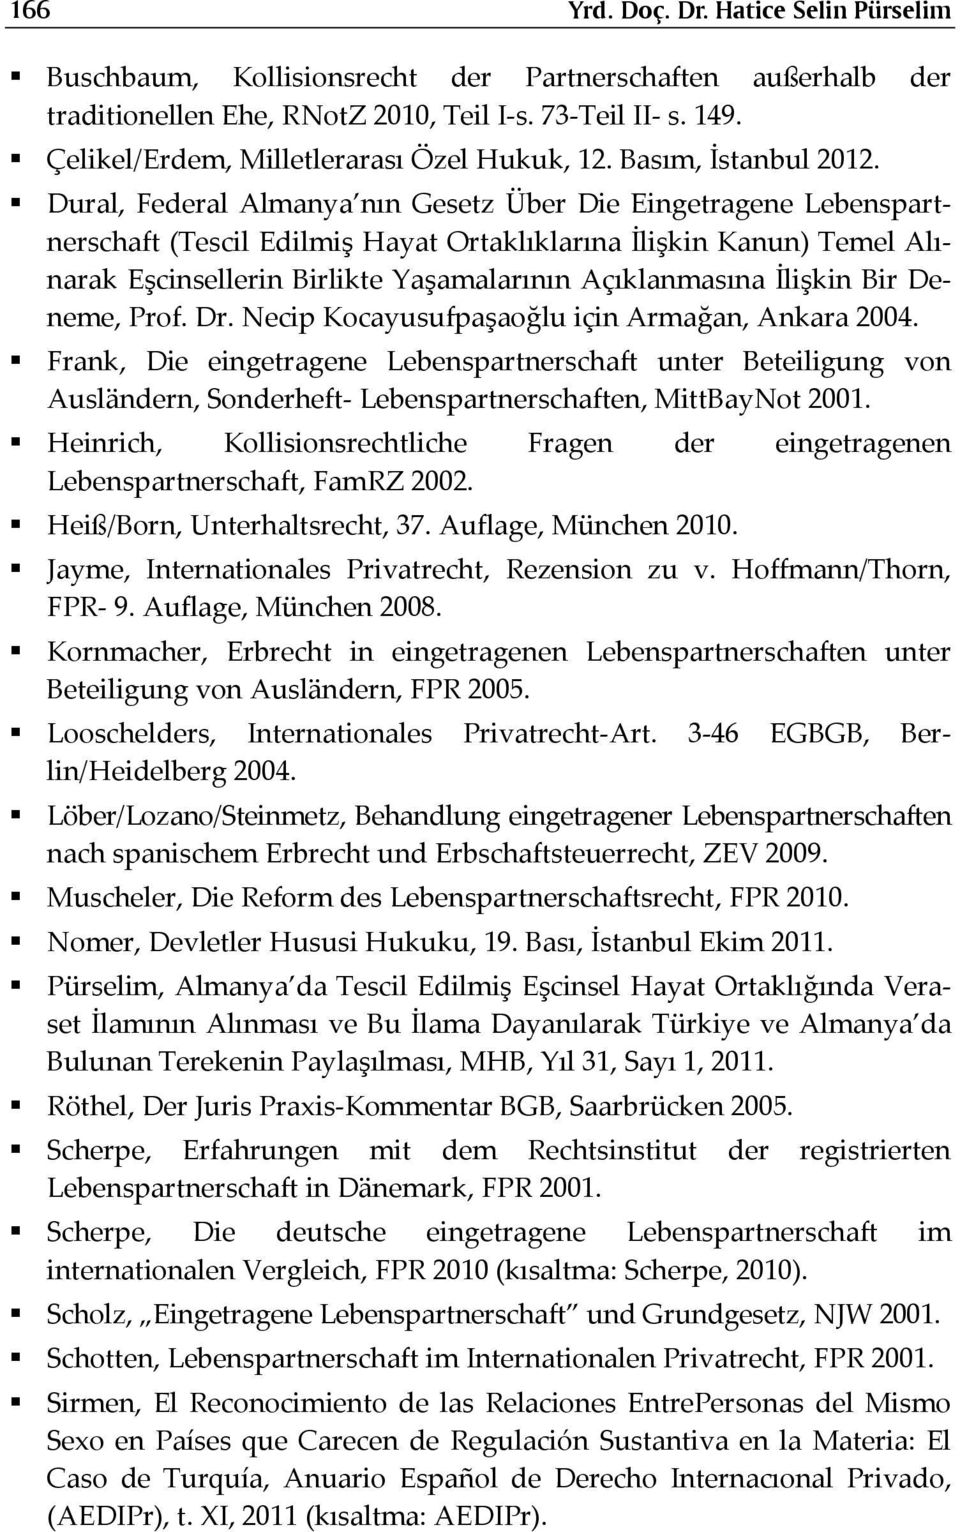 Dural, Federal Almanya nın Gesetz Über Die Eingetragene Lebenspartnerschaft (Tescil Edilmiş Hayat Ortaklıklarına İlişkin Kanun) Temel Alınarak Eşcinsellerin Birlikte Yaşamalarının Açıklanmasına